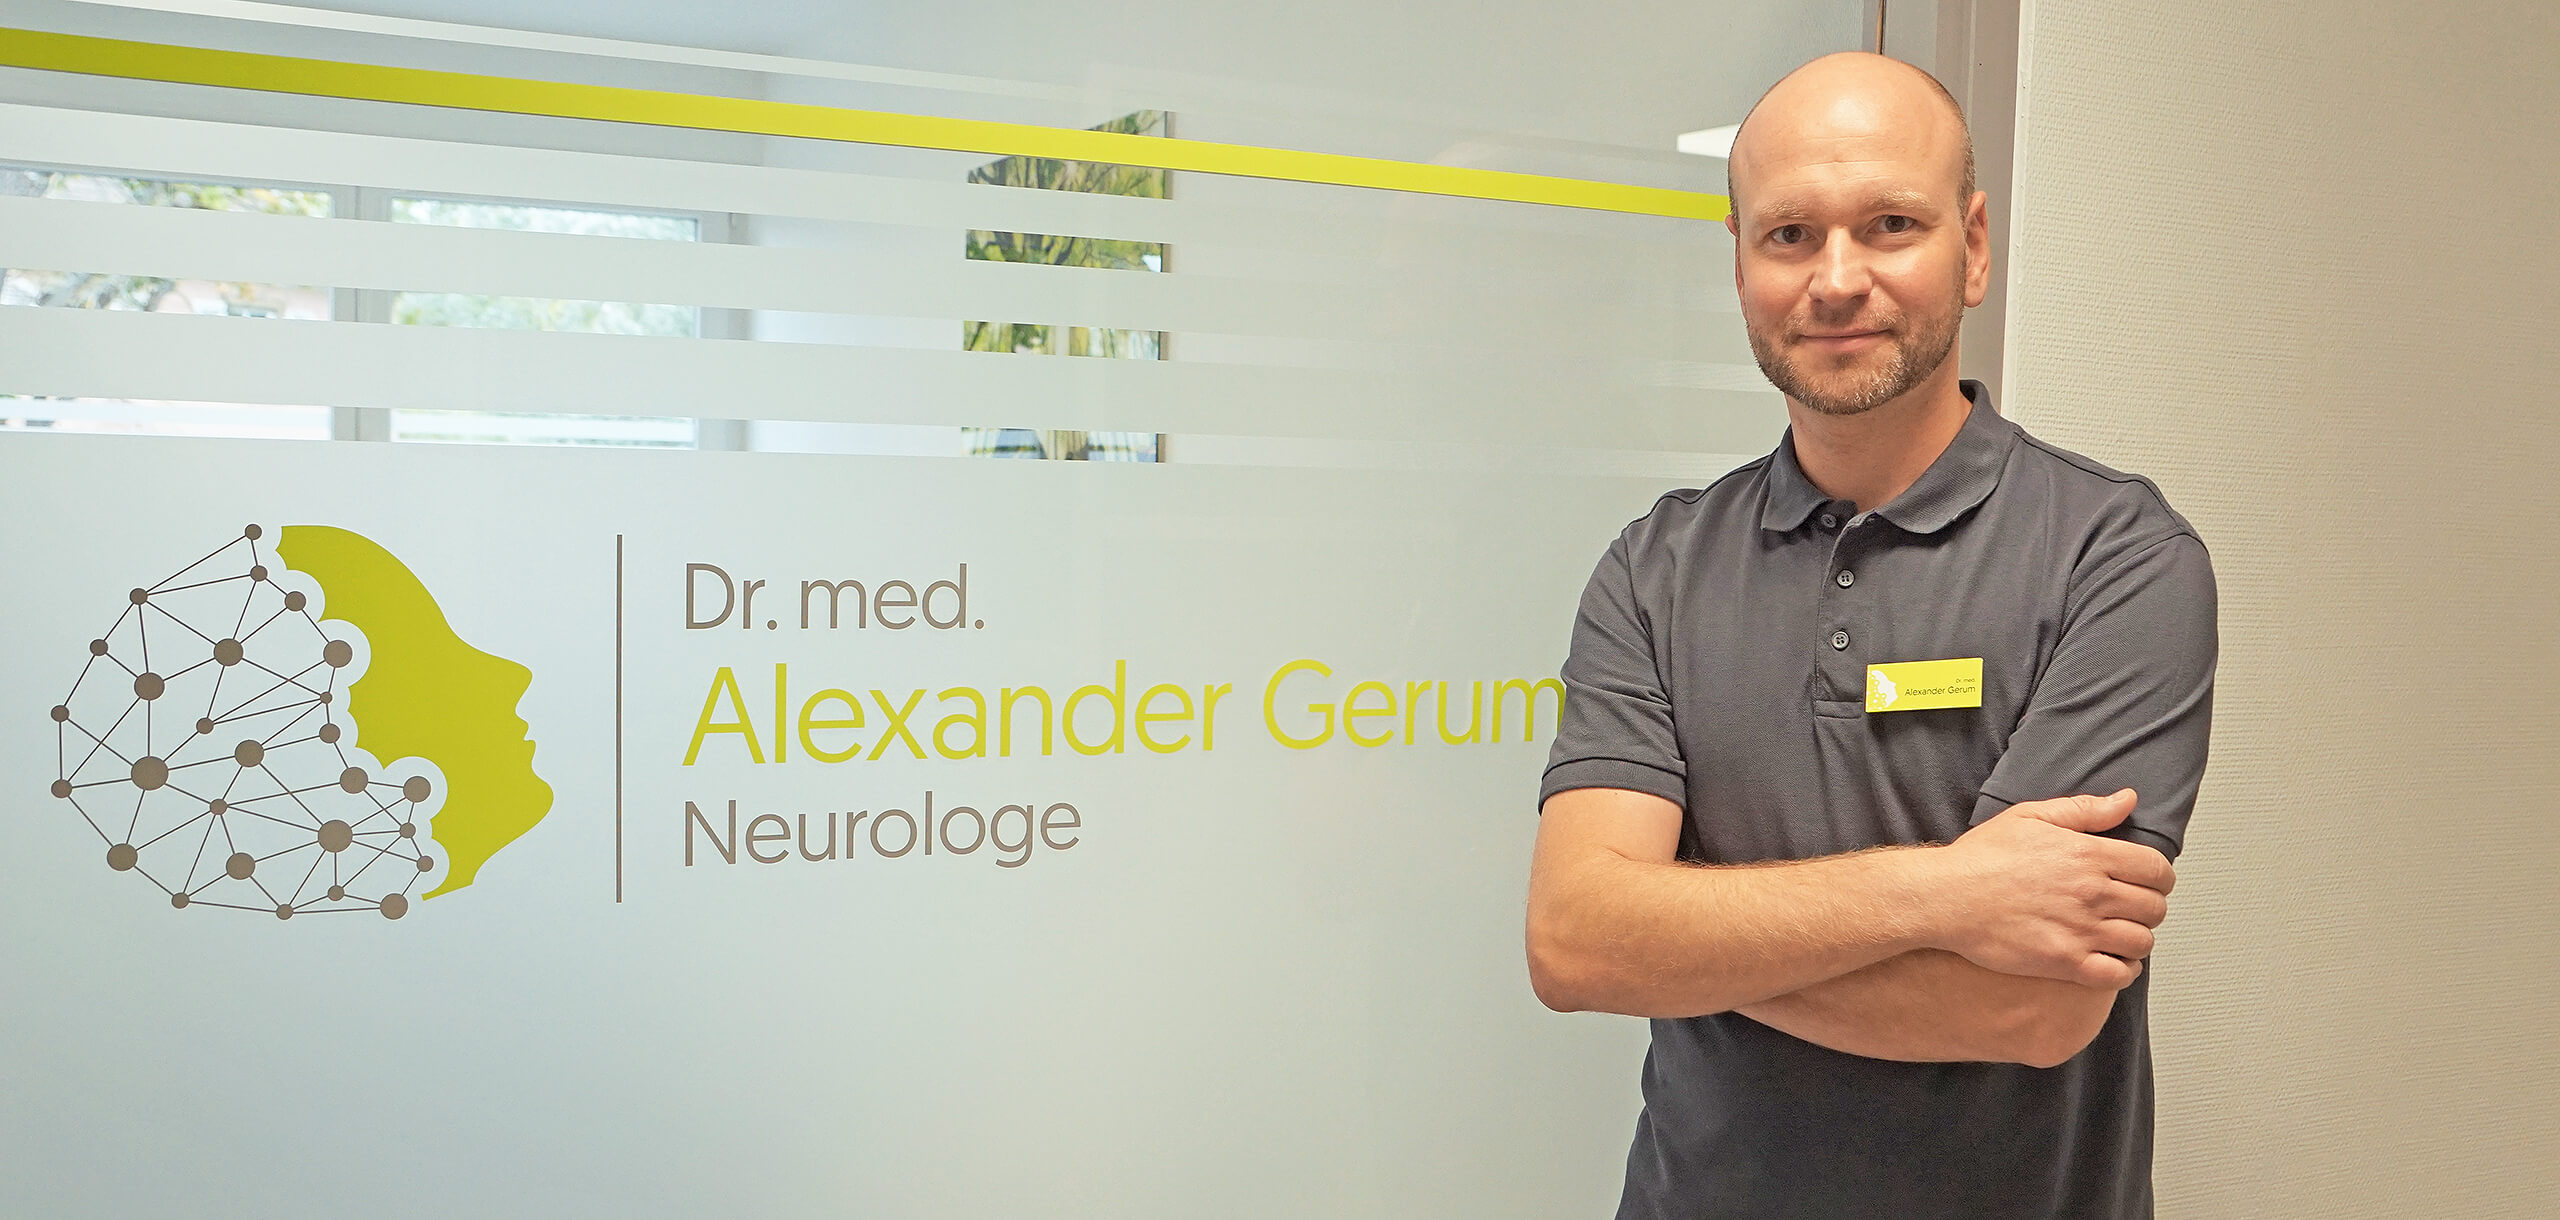 Dr. med. Alexander Gerum